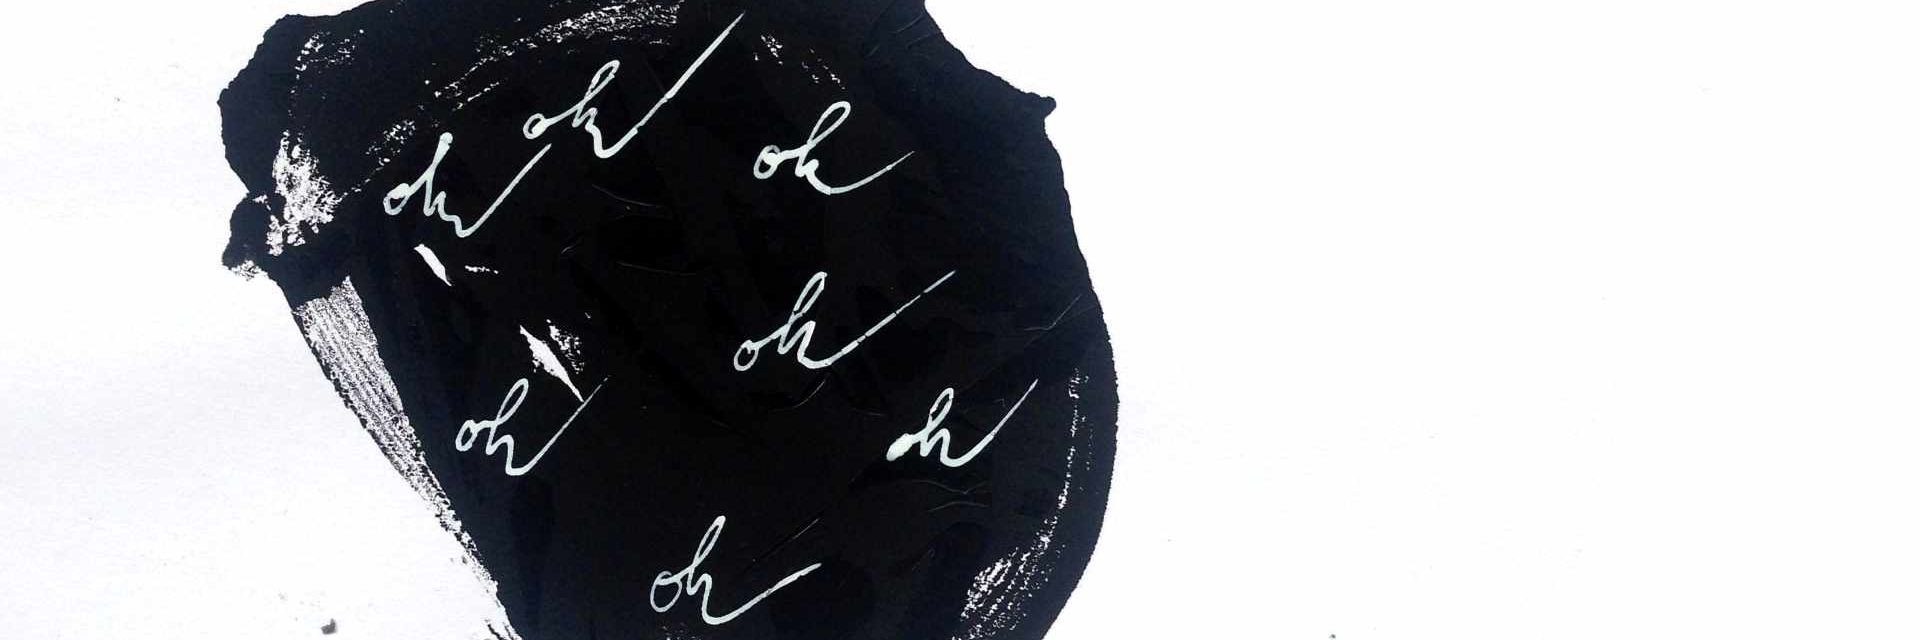 künstlerische Arbeit: schwarzer Klecks mit eingeritzen Buchstaben OK